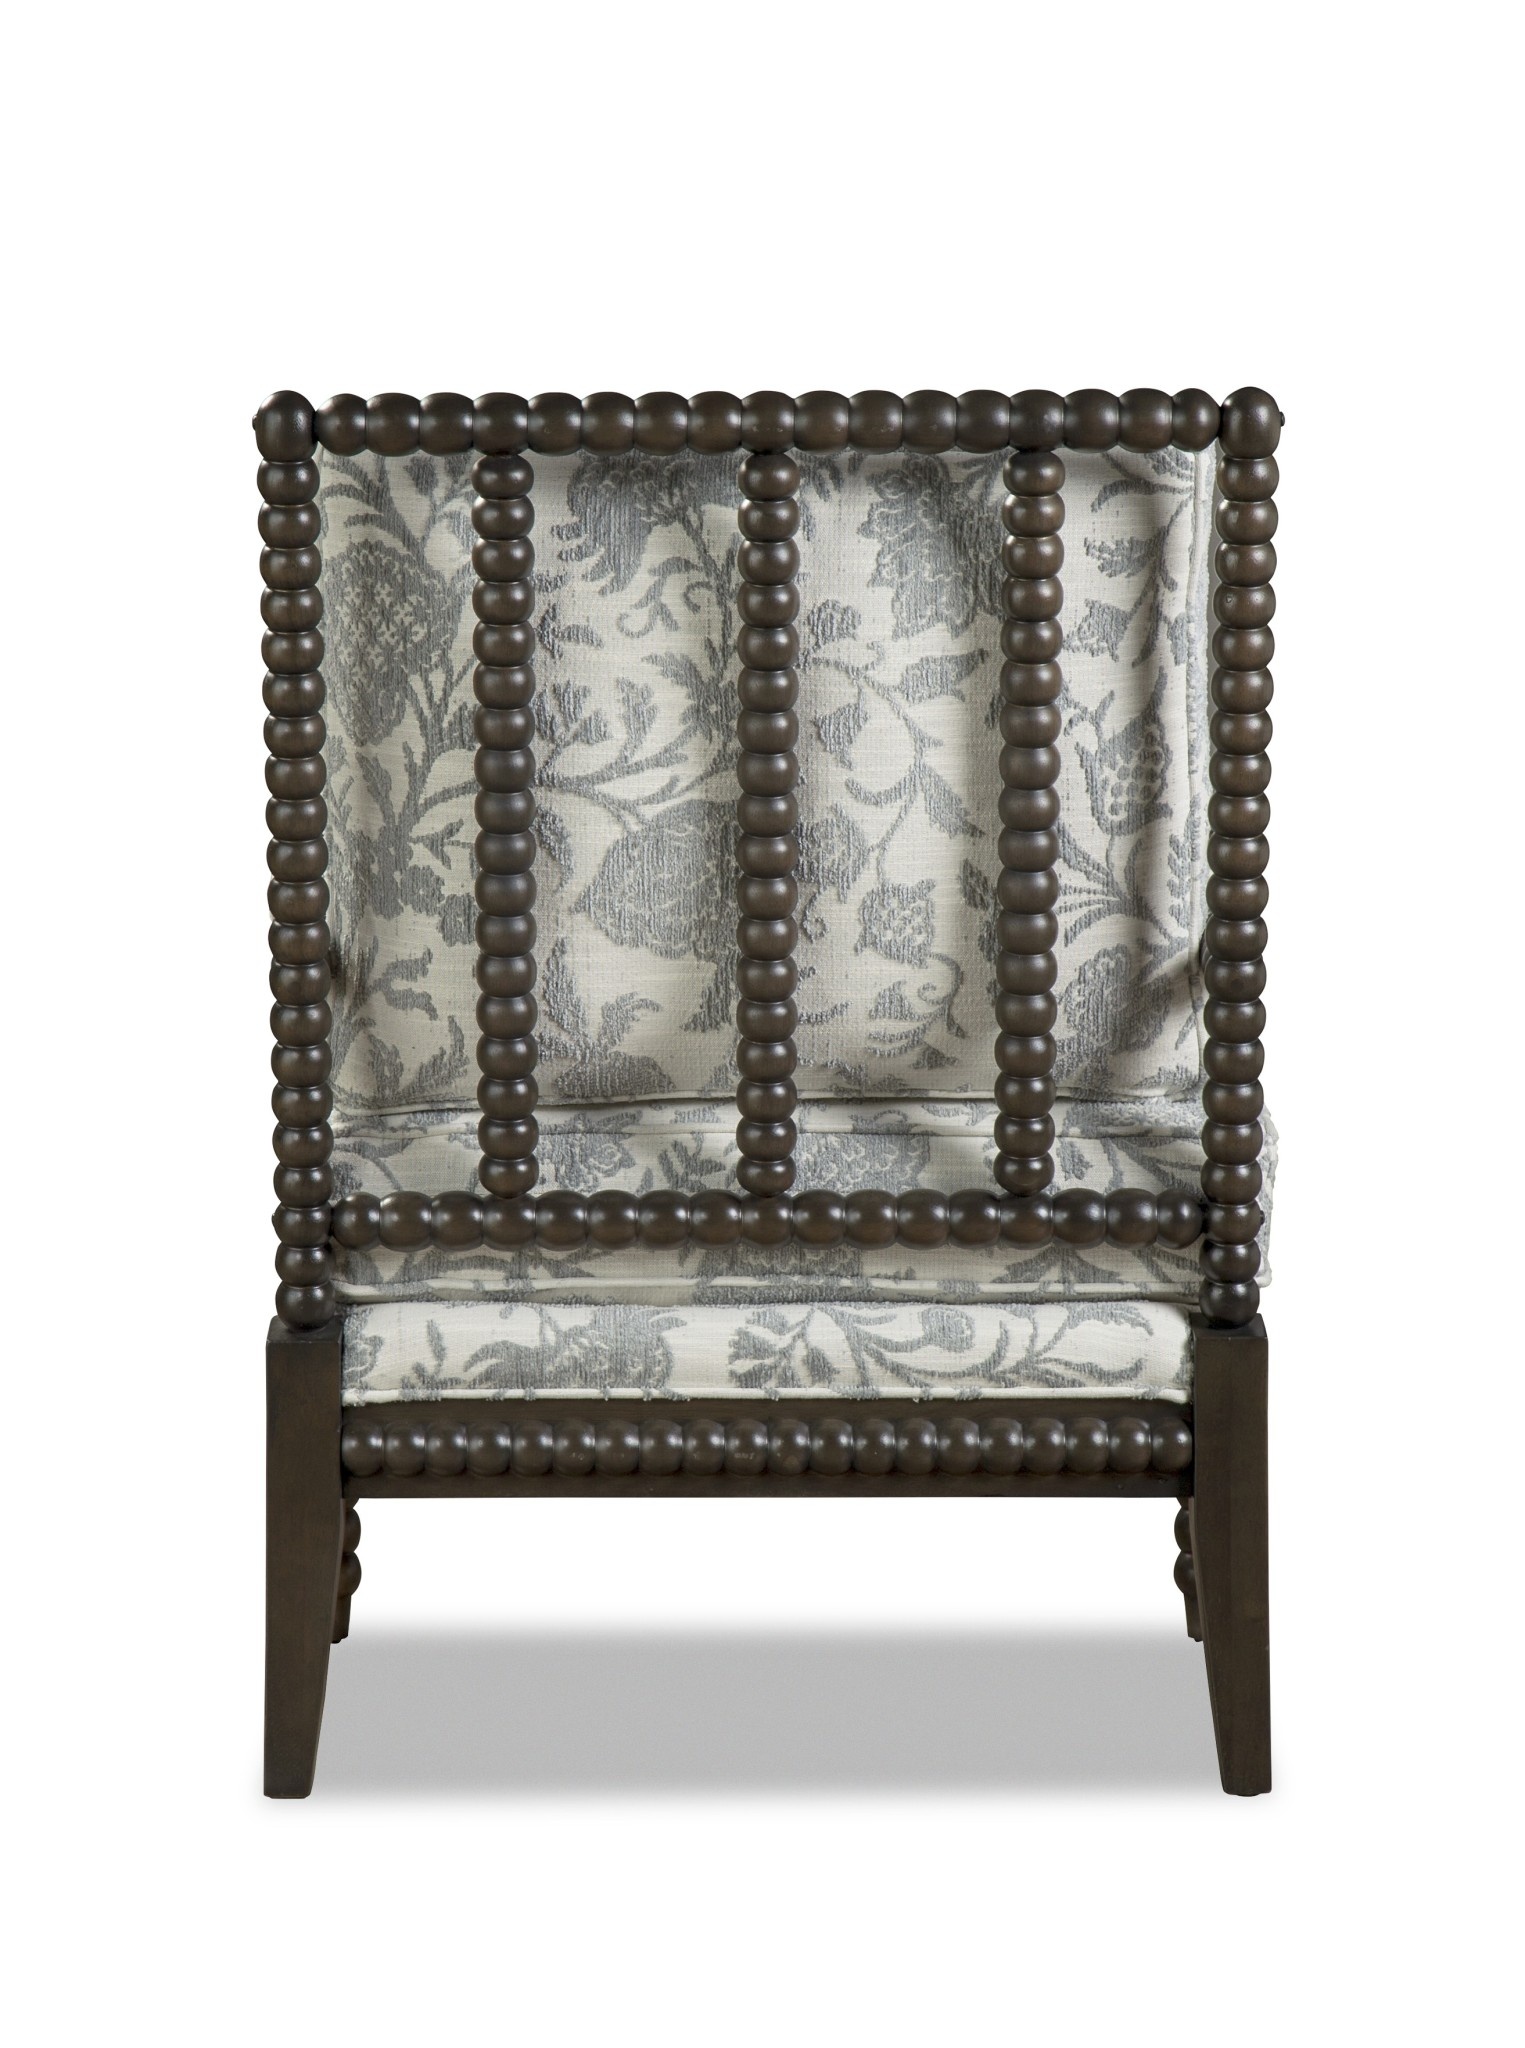 Craftmaster Furniture P052610BD Paula Deen Chair